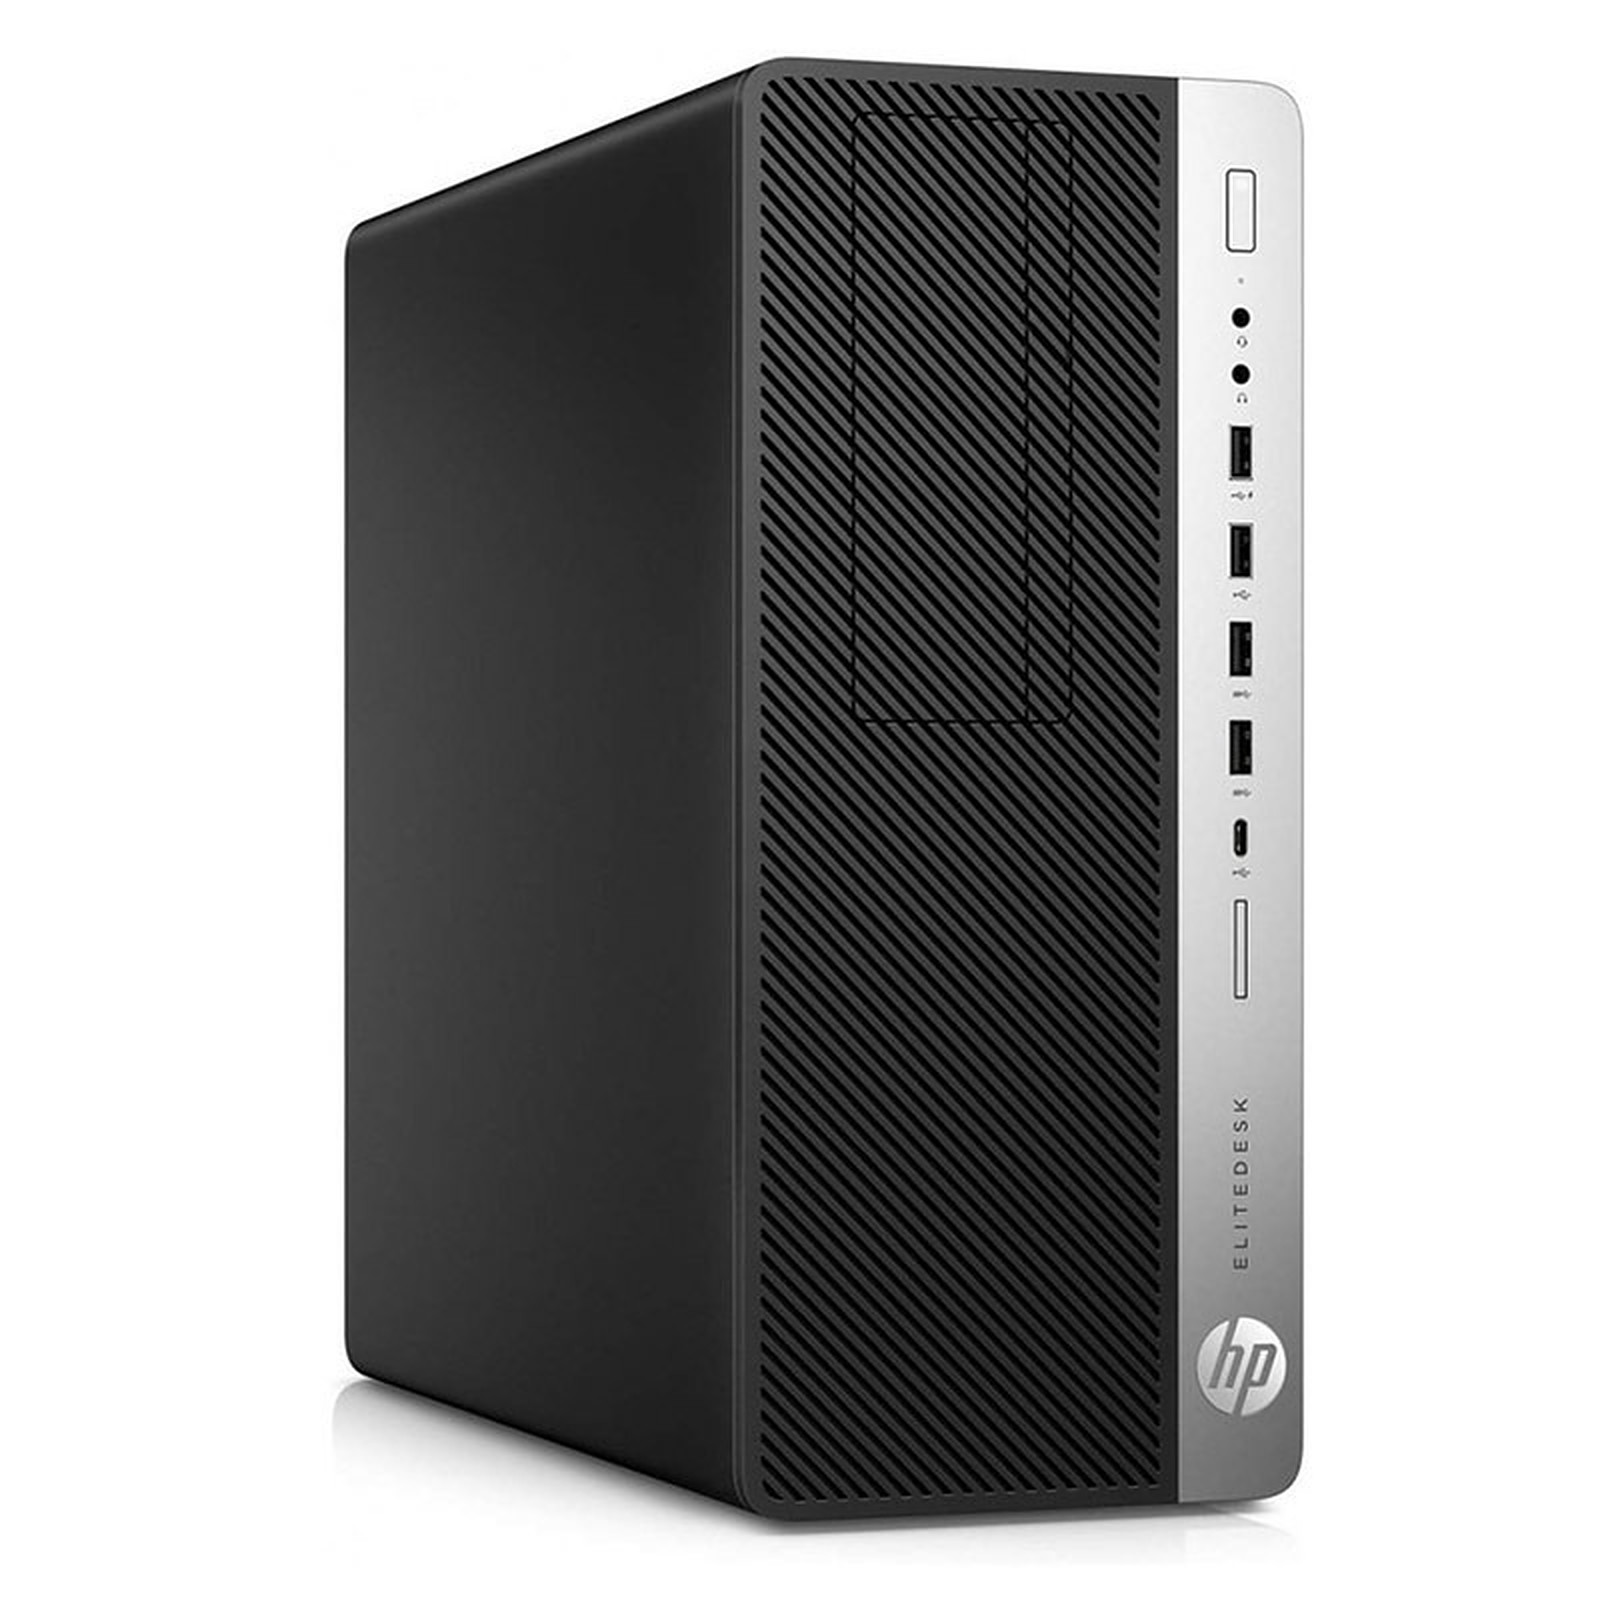 HP LPG-800G3 (I5658124S) · Reconditionne - PC de bureau reconditionne HP